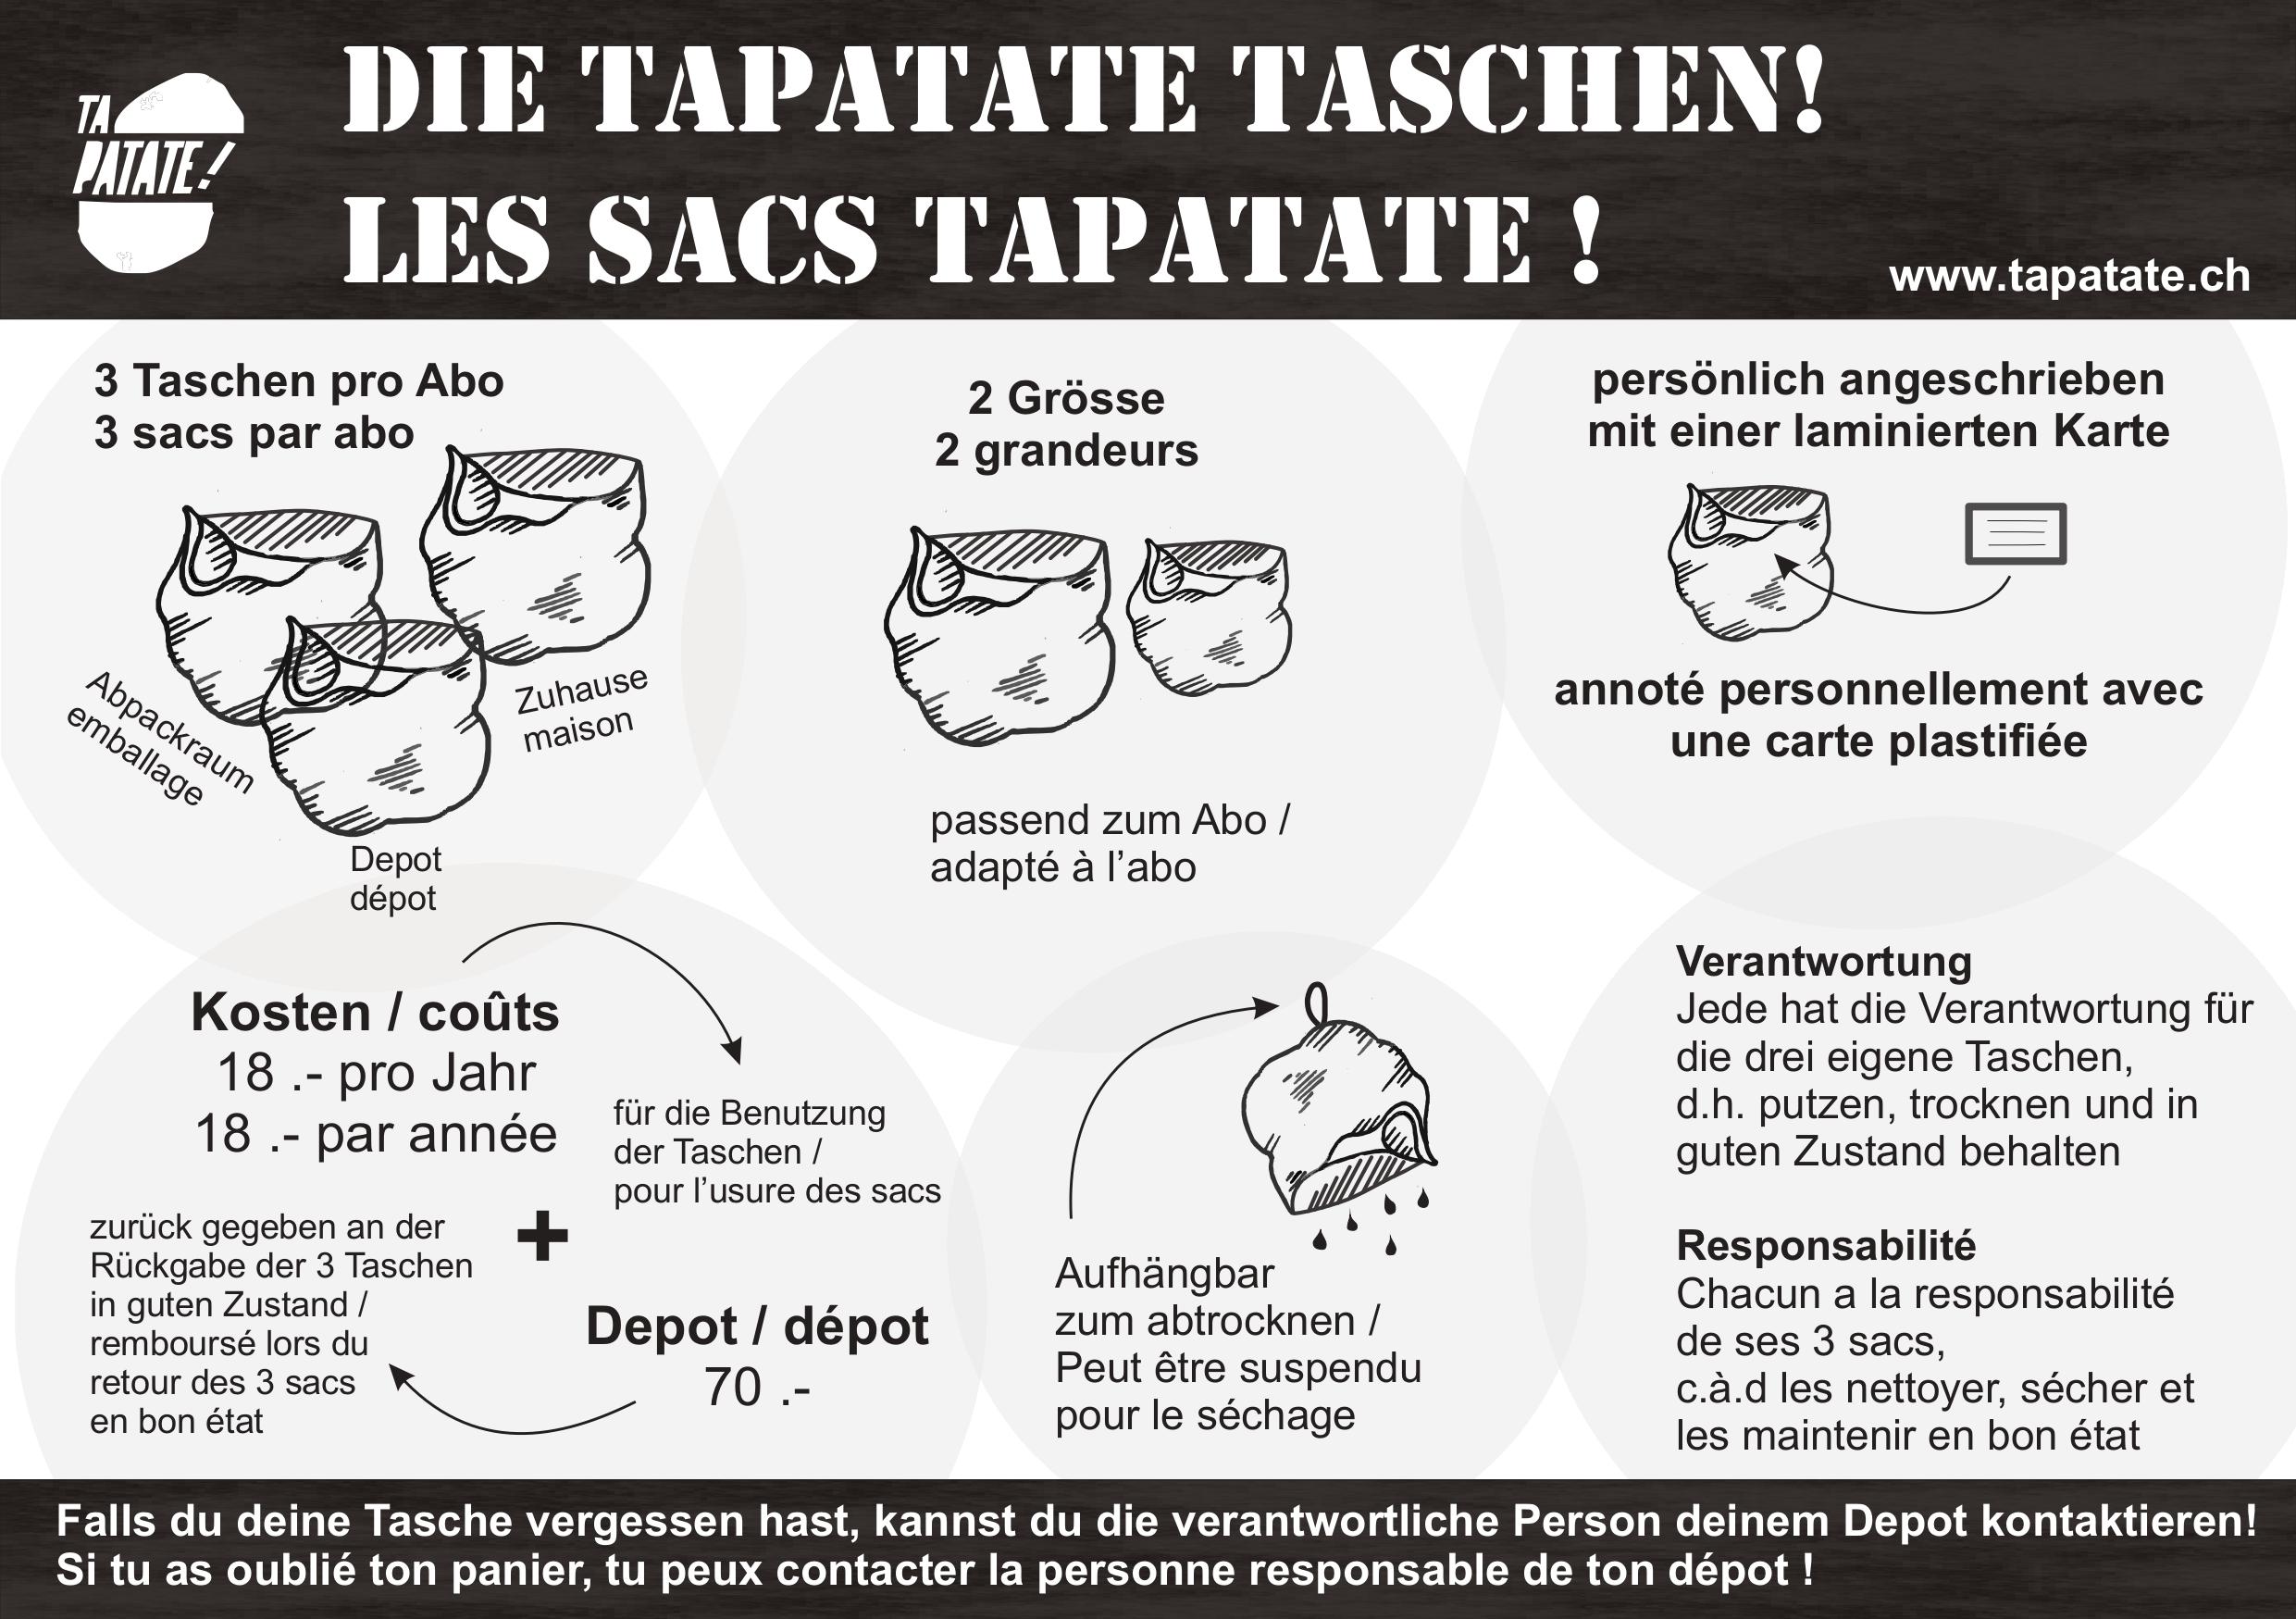 Taschen TaPatate!